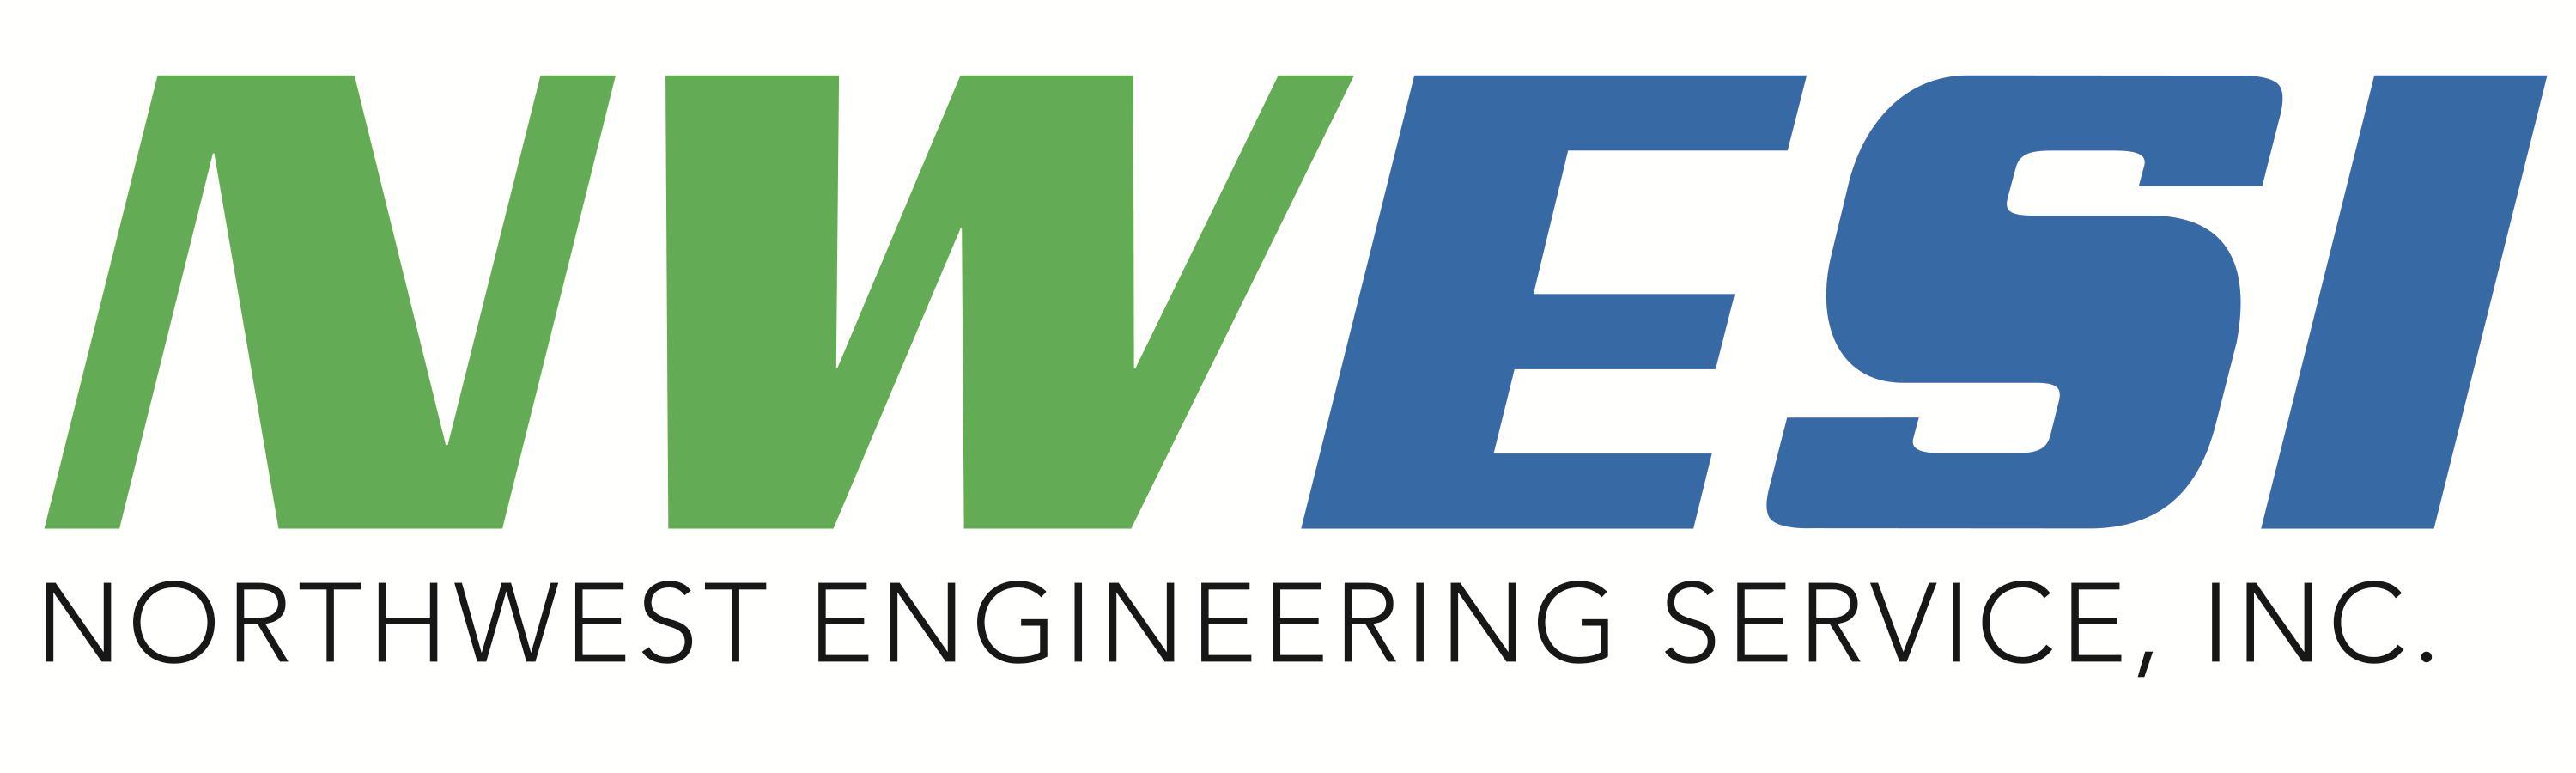 NorthWest Engineering Service, Inc. Company Logo